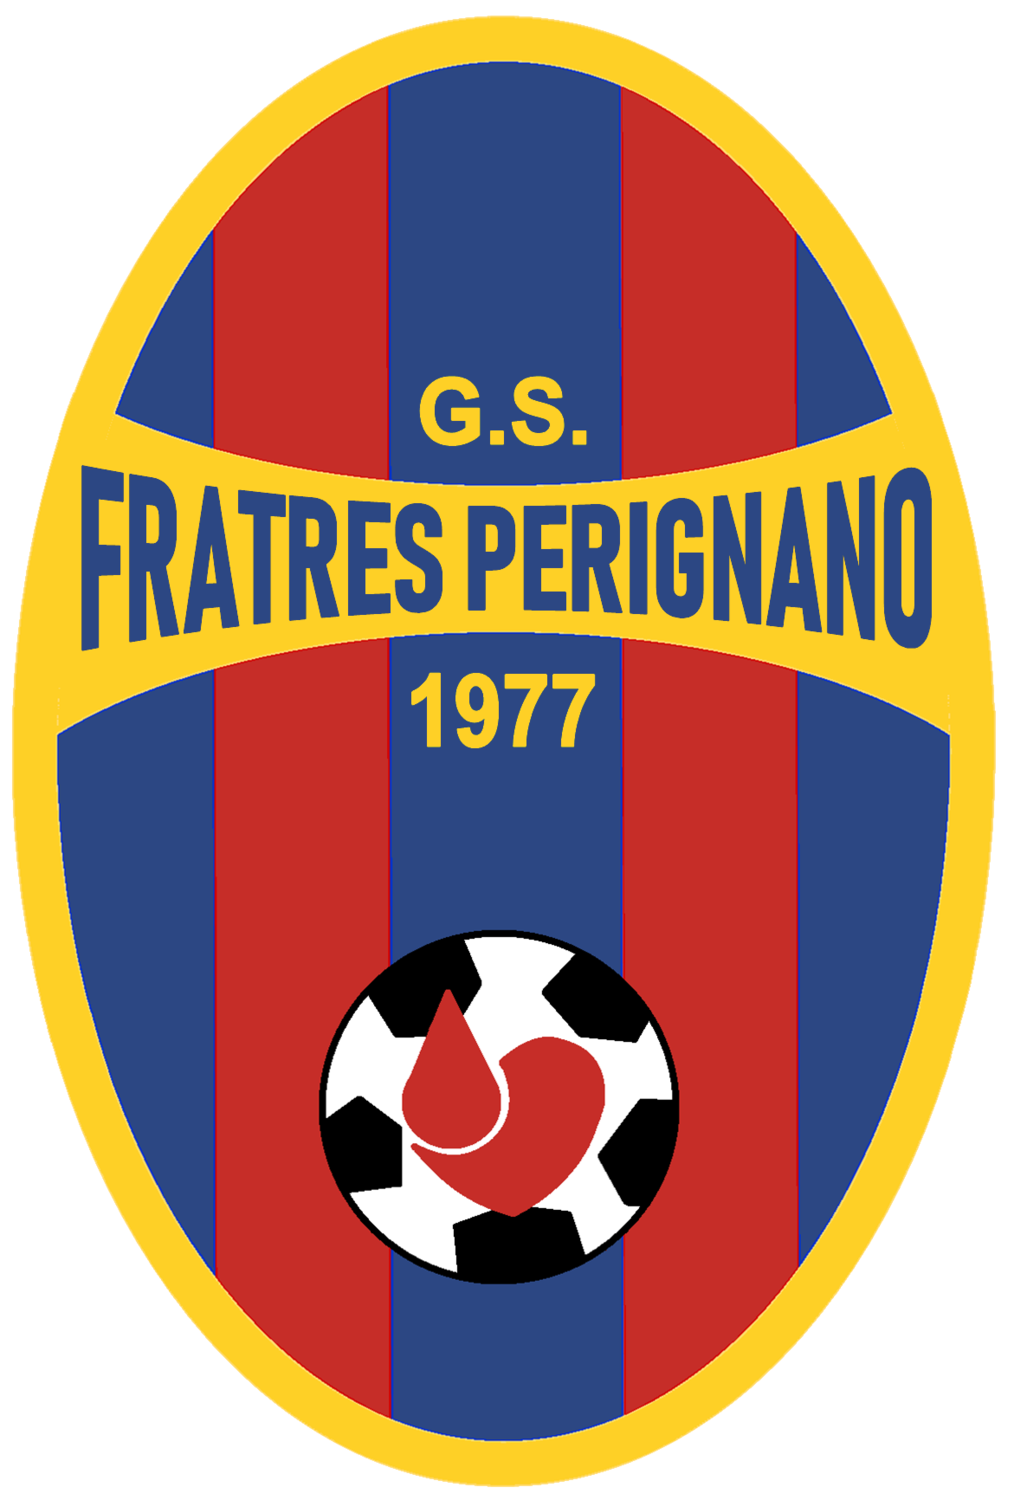 Wappen Fratres Perignano 2019